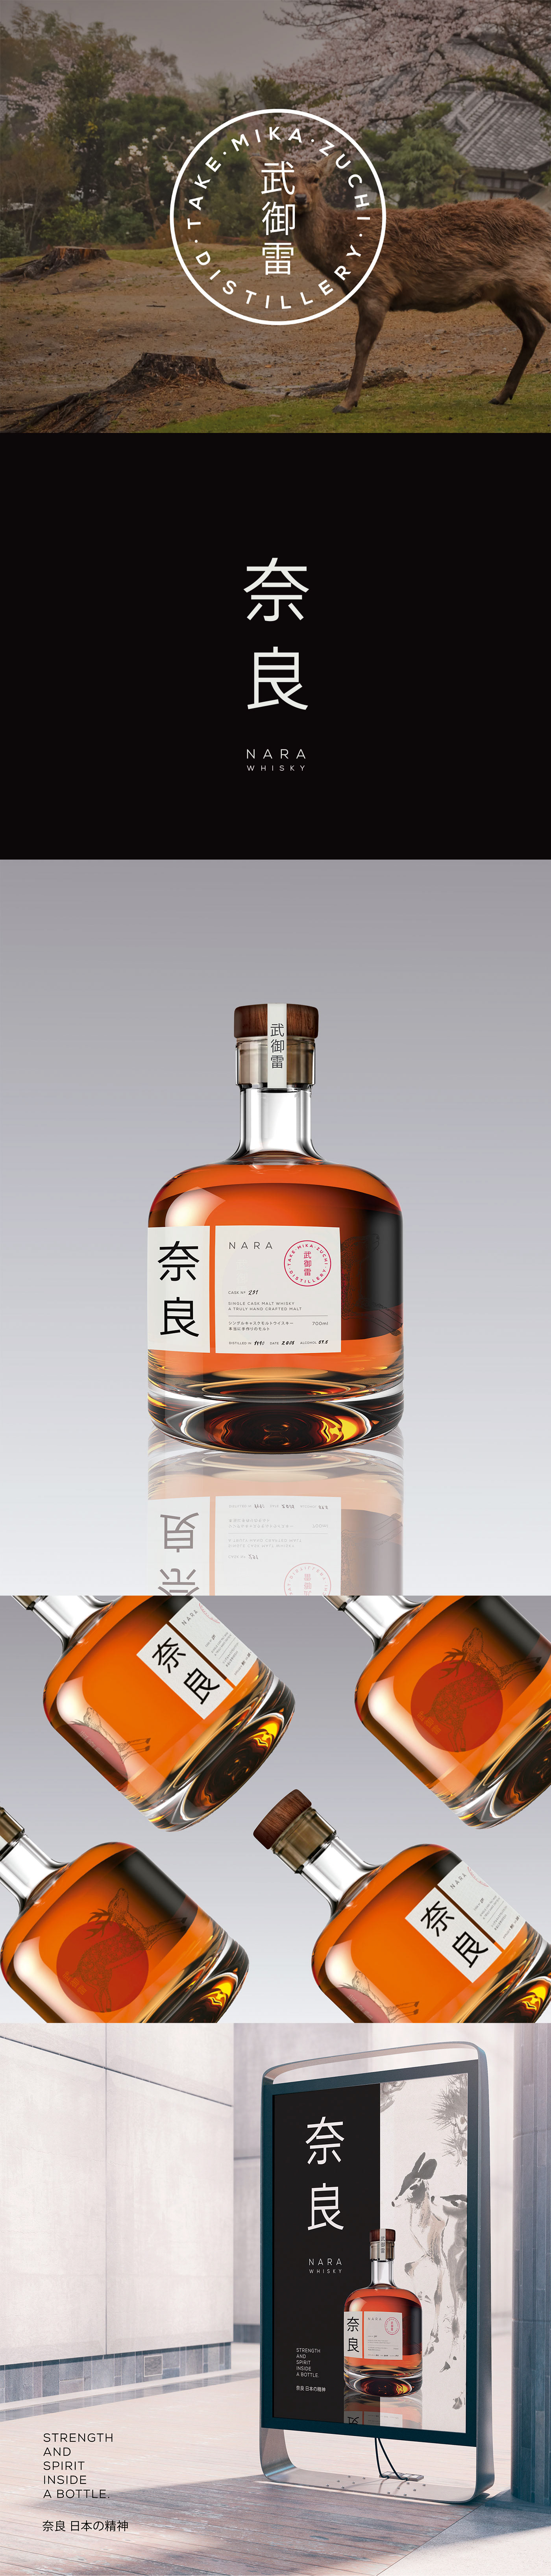 deer Nara Whisky distillery japan japanese design branding  bottle packing